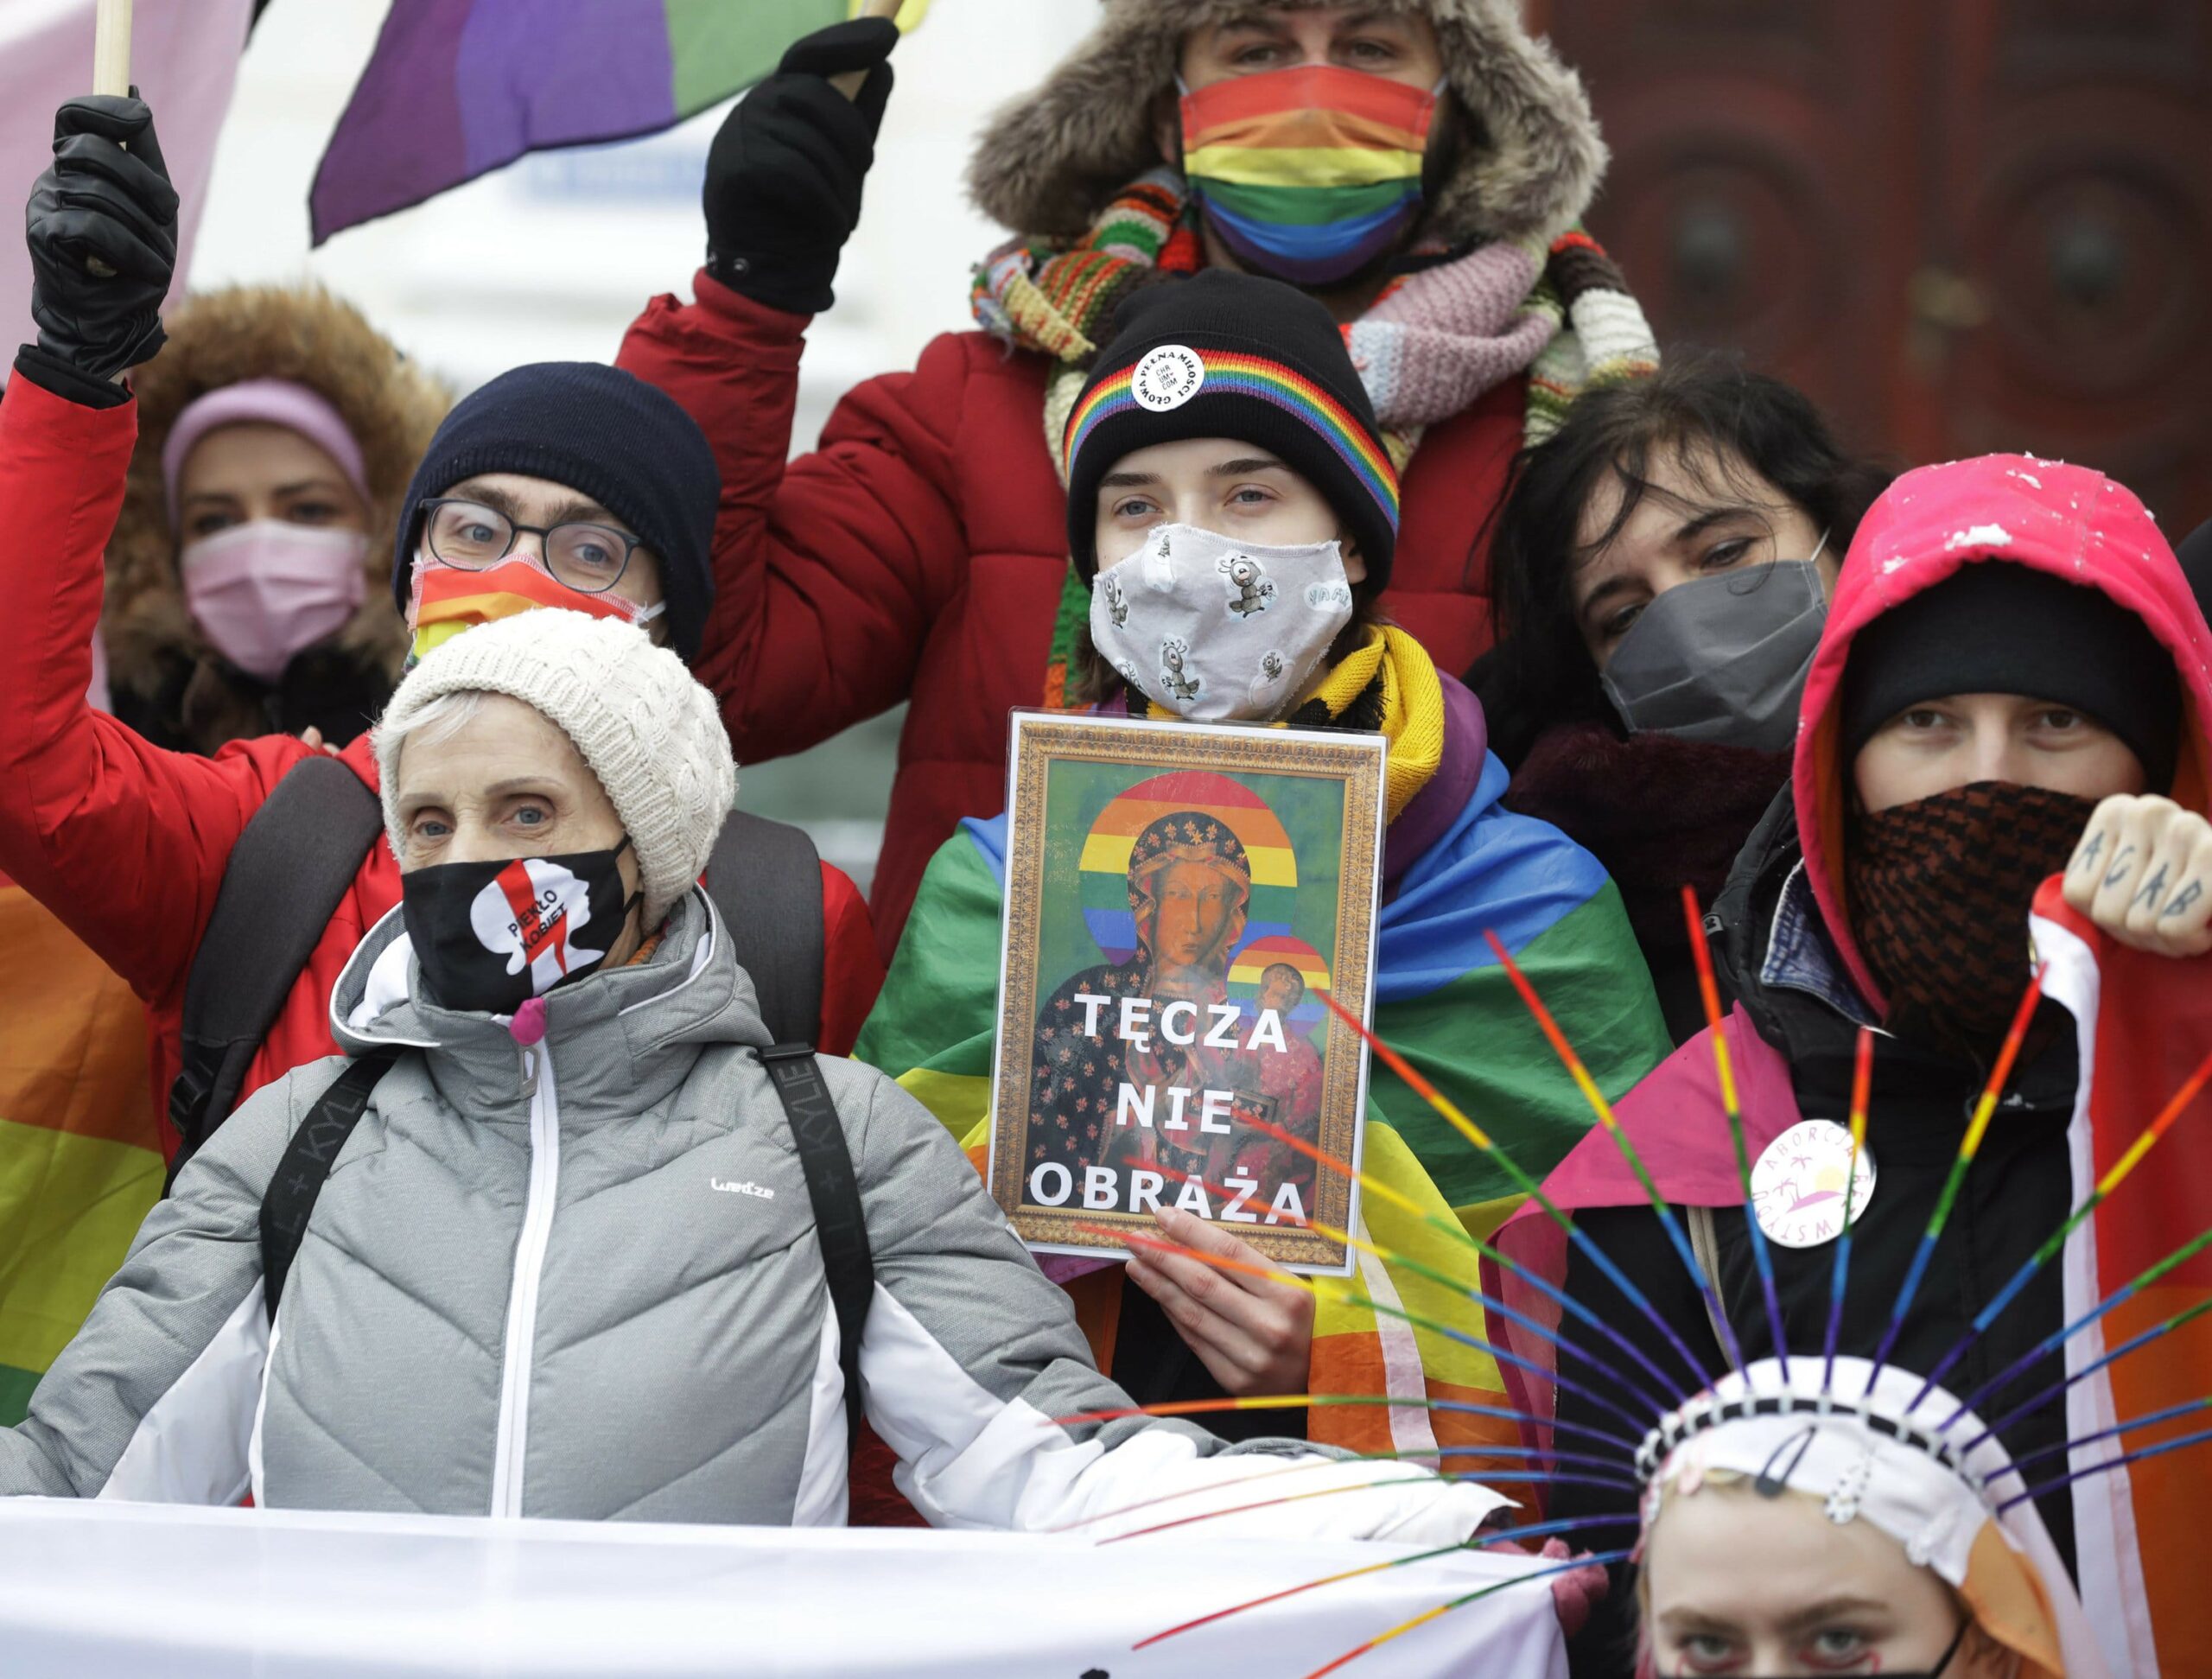 Богоматір з німбом у кольорах ЛГБТ: польський суд виправдав активісток